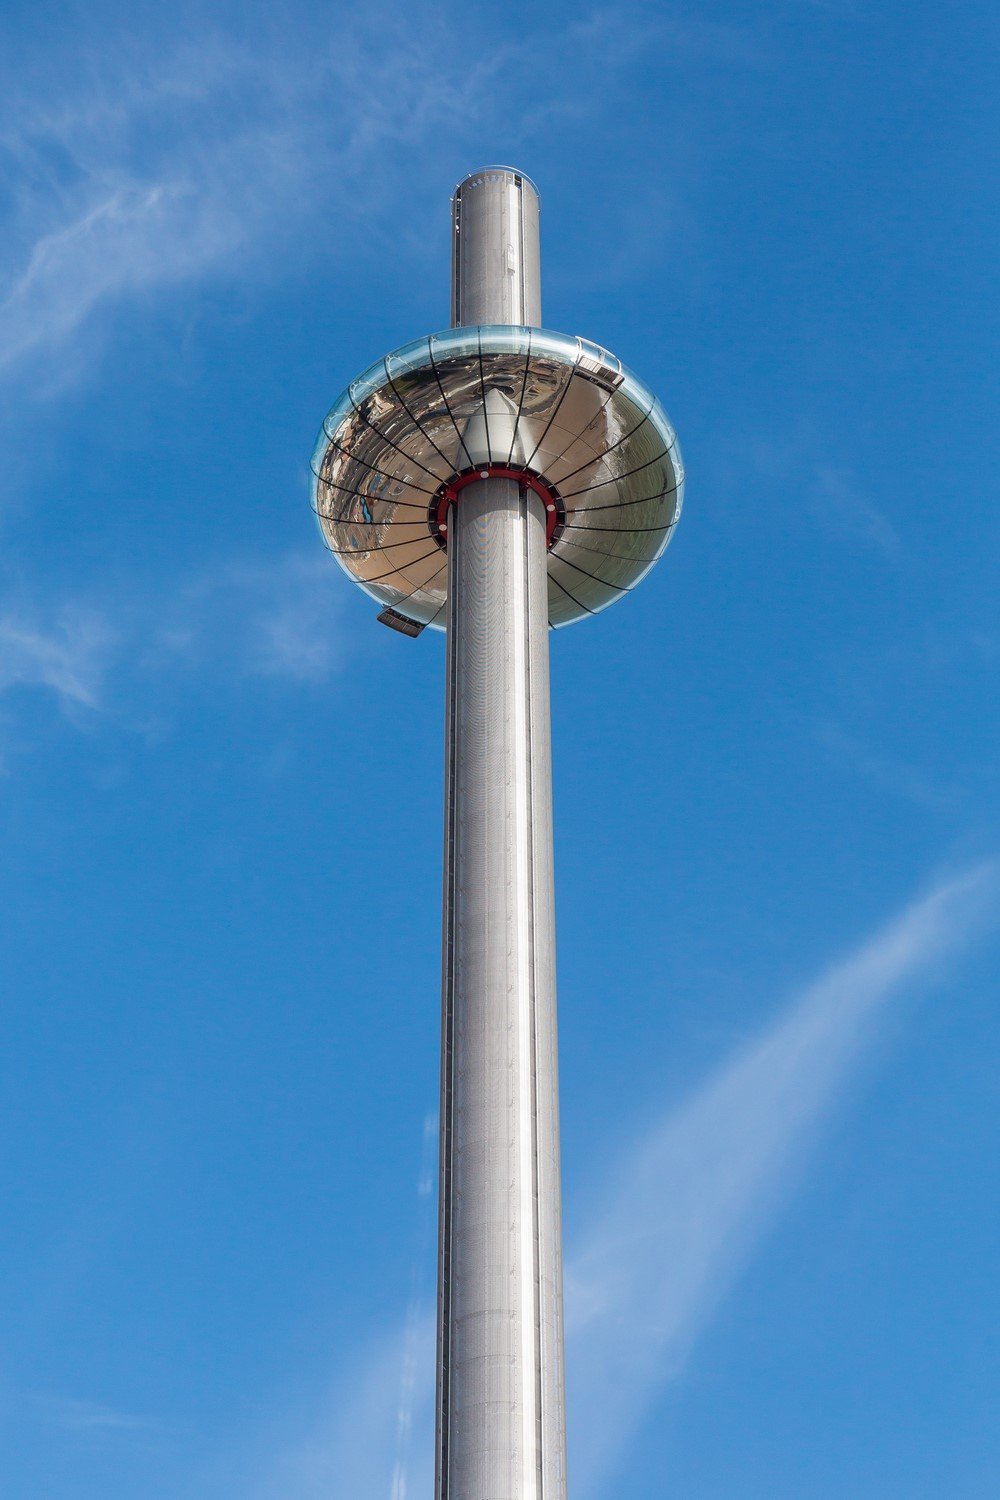 Brighton inaugura la torre de observación más alta del mundo